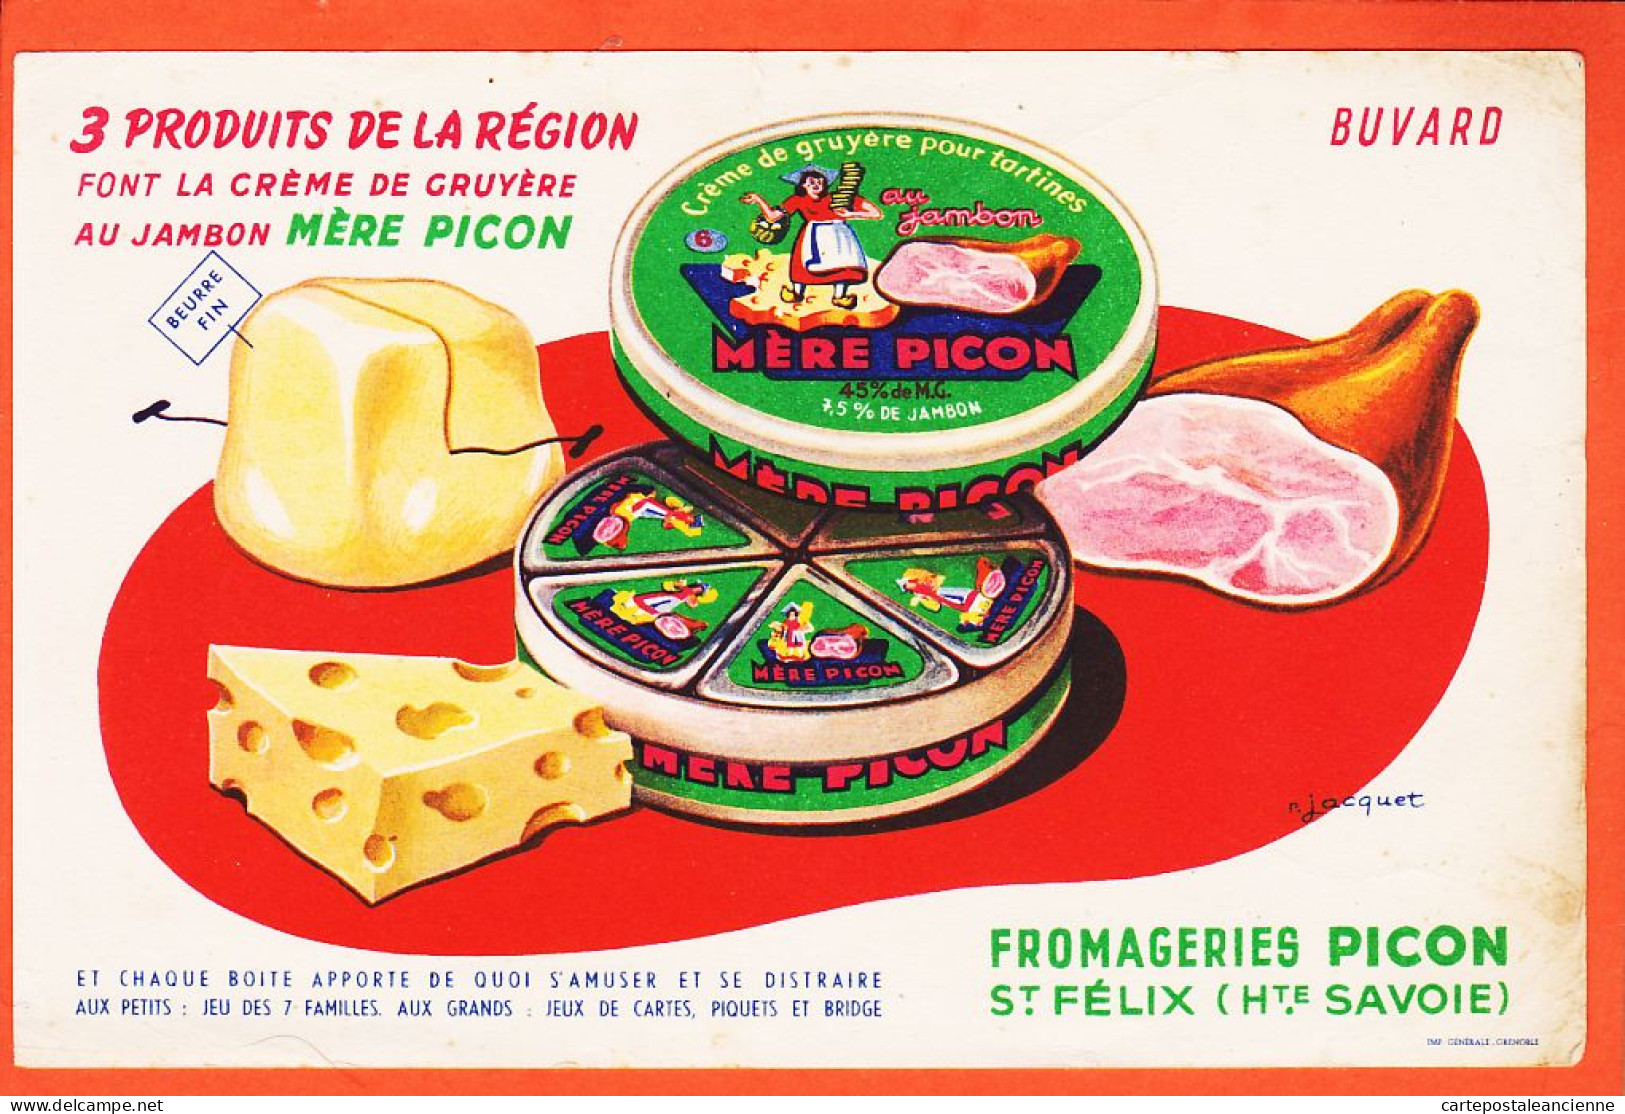 06258 / SAINT-FELIX St 74-Haute Savoie Buvard Fromageries MERE PICON Produits Région Crème Gruyere Jambon Par JACQUET - Dairy